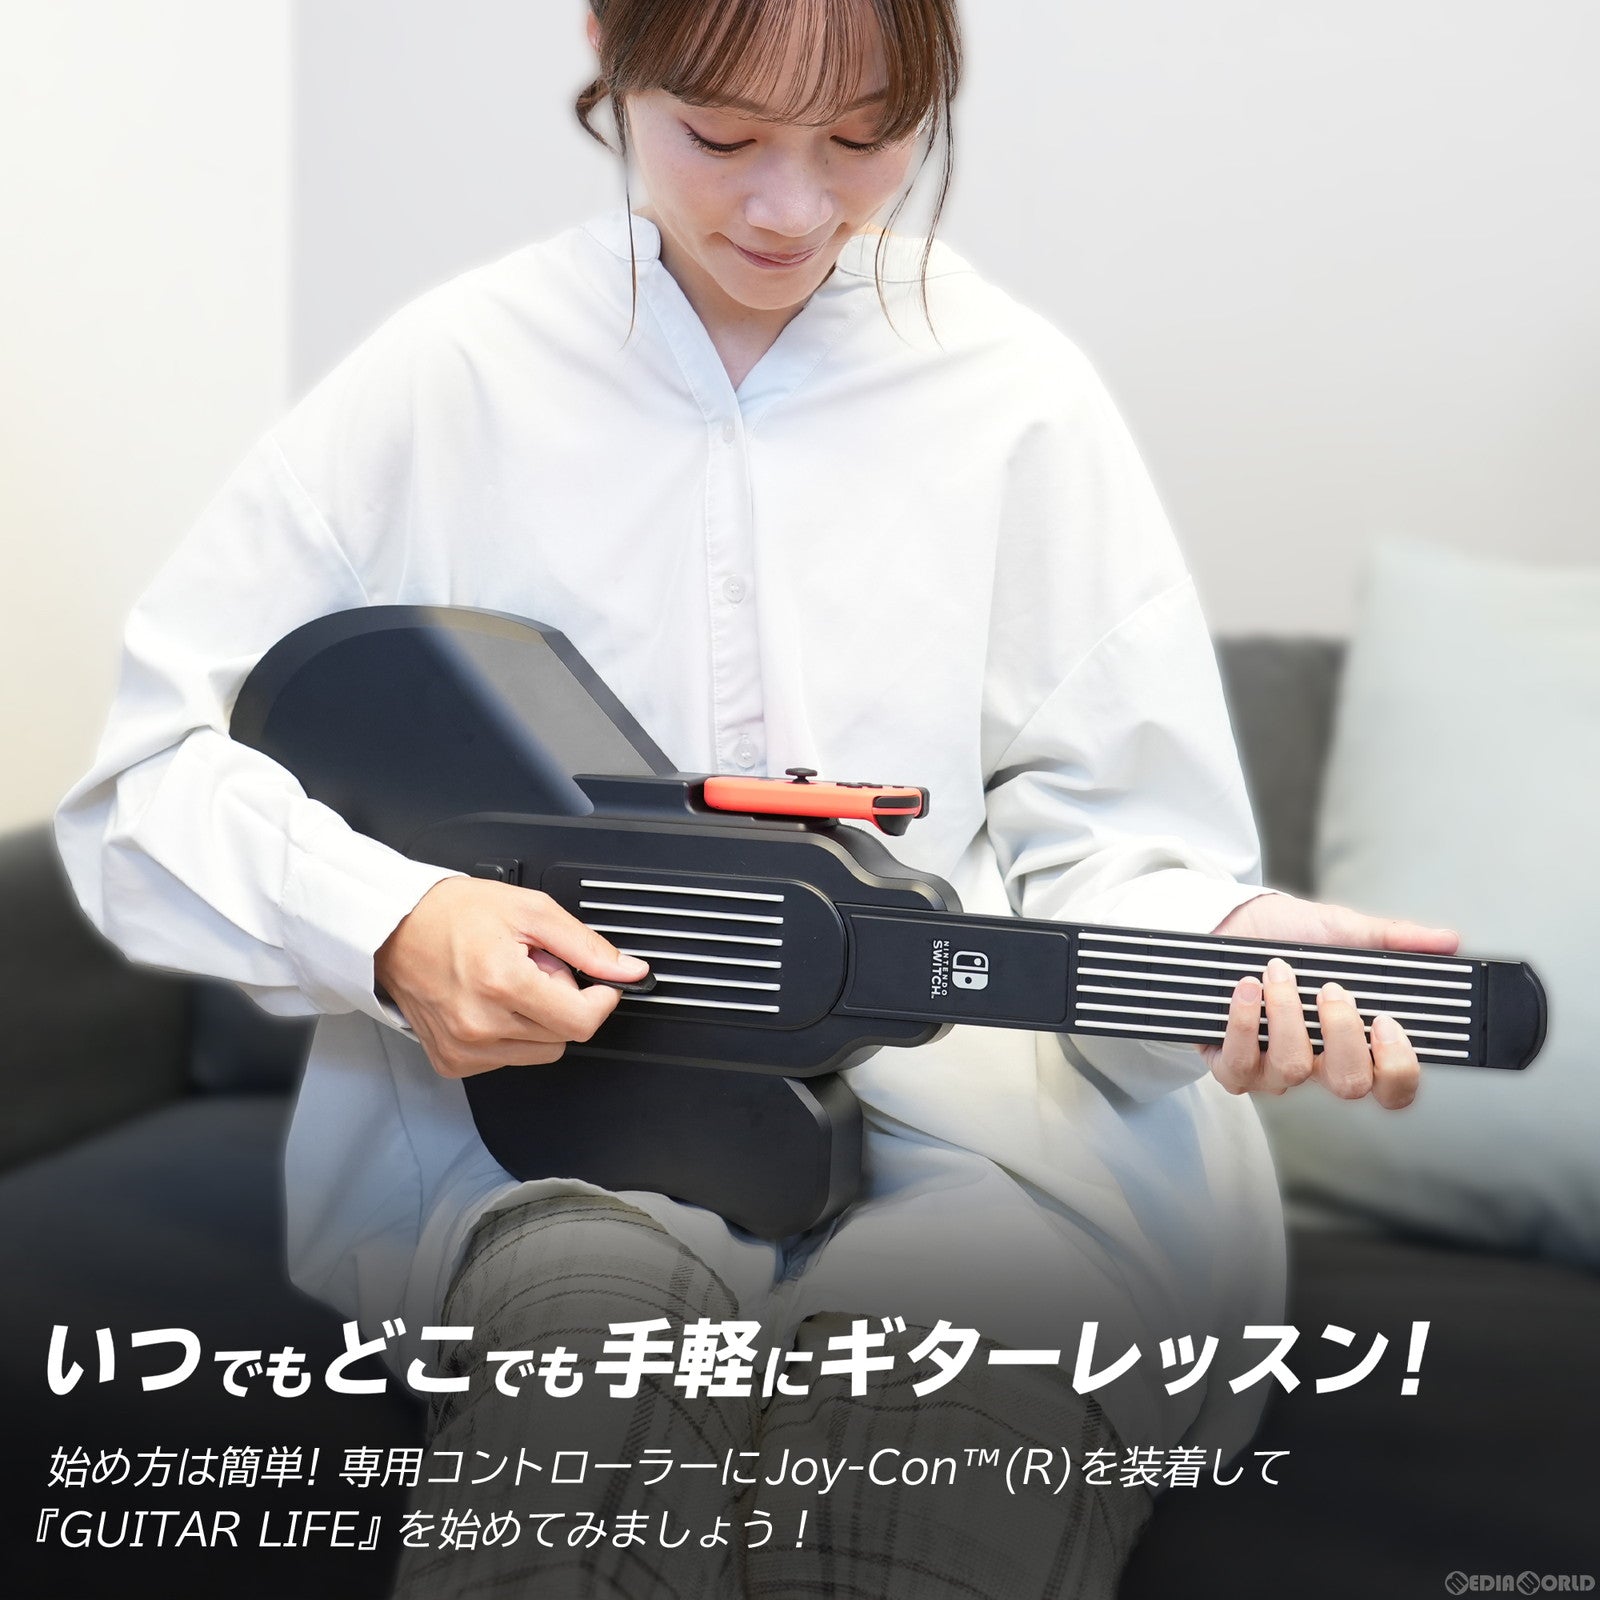 【中古即納】[Switch]GUITAR LIFE Lesson1 for Nintendo Switch(ギターライフ レッスン1 フォー ニンテンドースイッチ) 専用ギターコントローラー同梱(20240425)